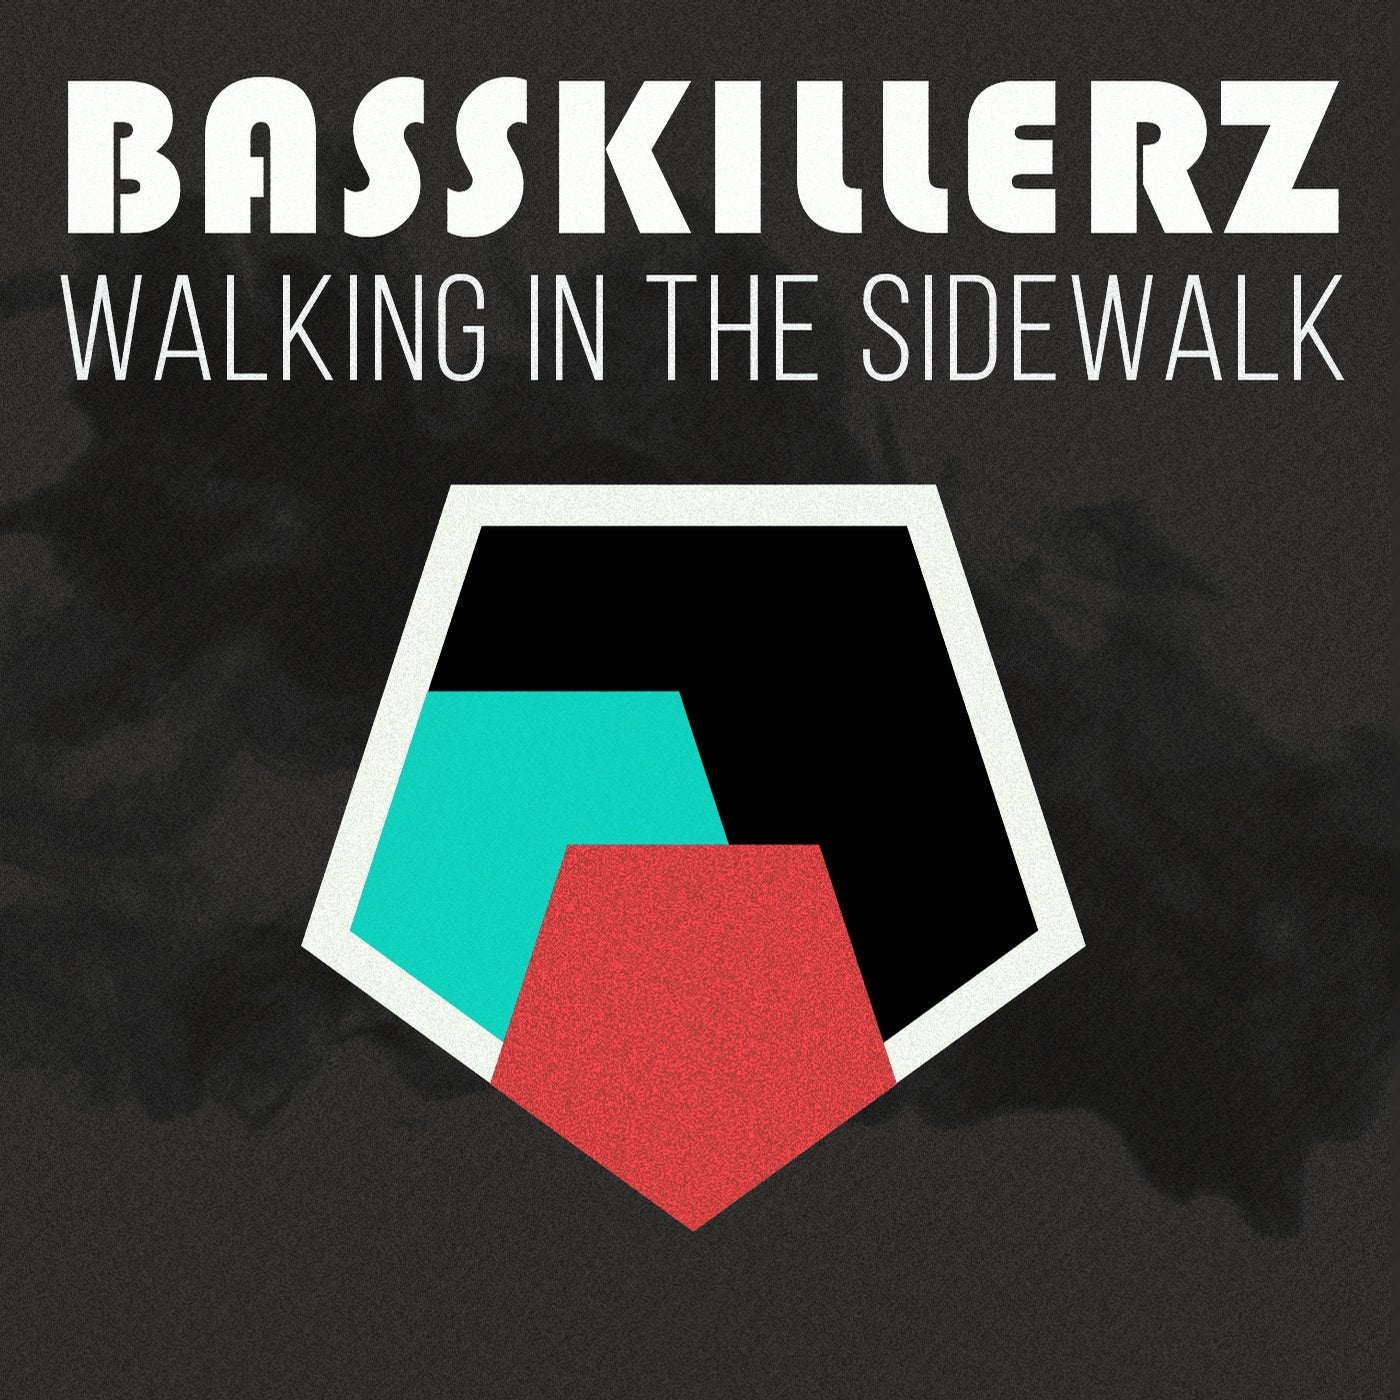 Walking in The Sidewalk